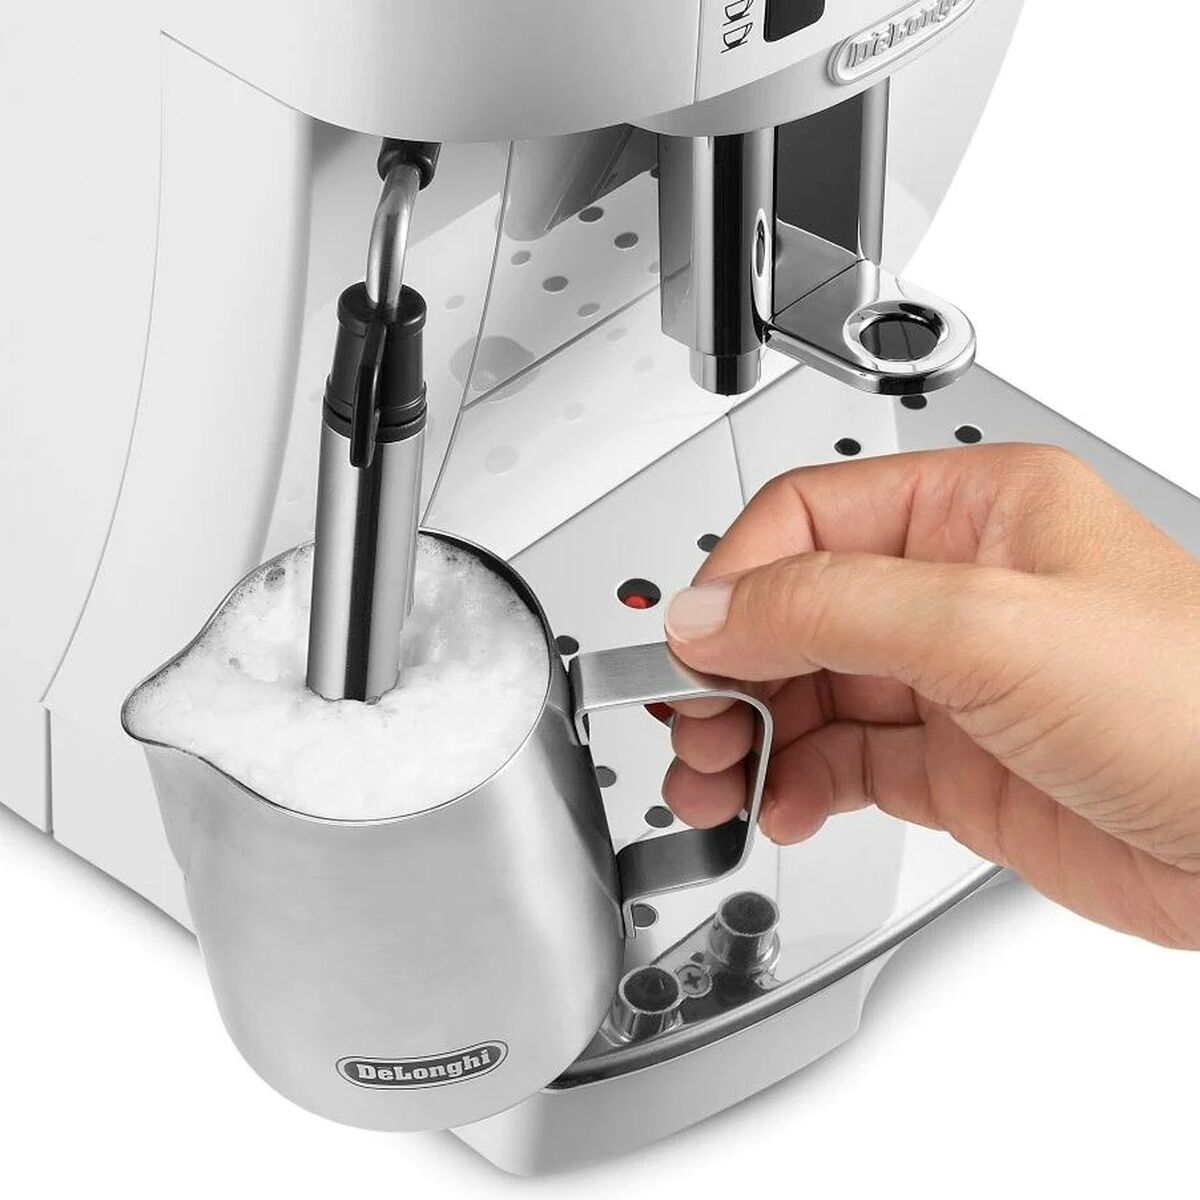 Superautomatische Kaffeemaschine DeLonghi ECAM 21.117 W Weiß 1450 W 15 bar 2 Kopper 1,8 L